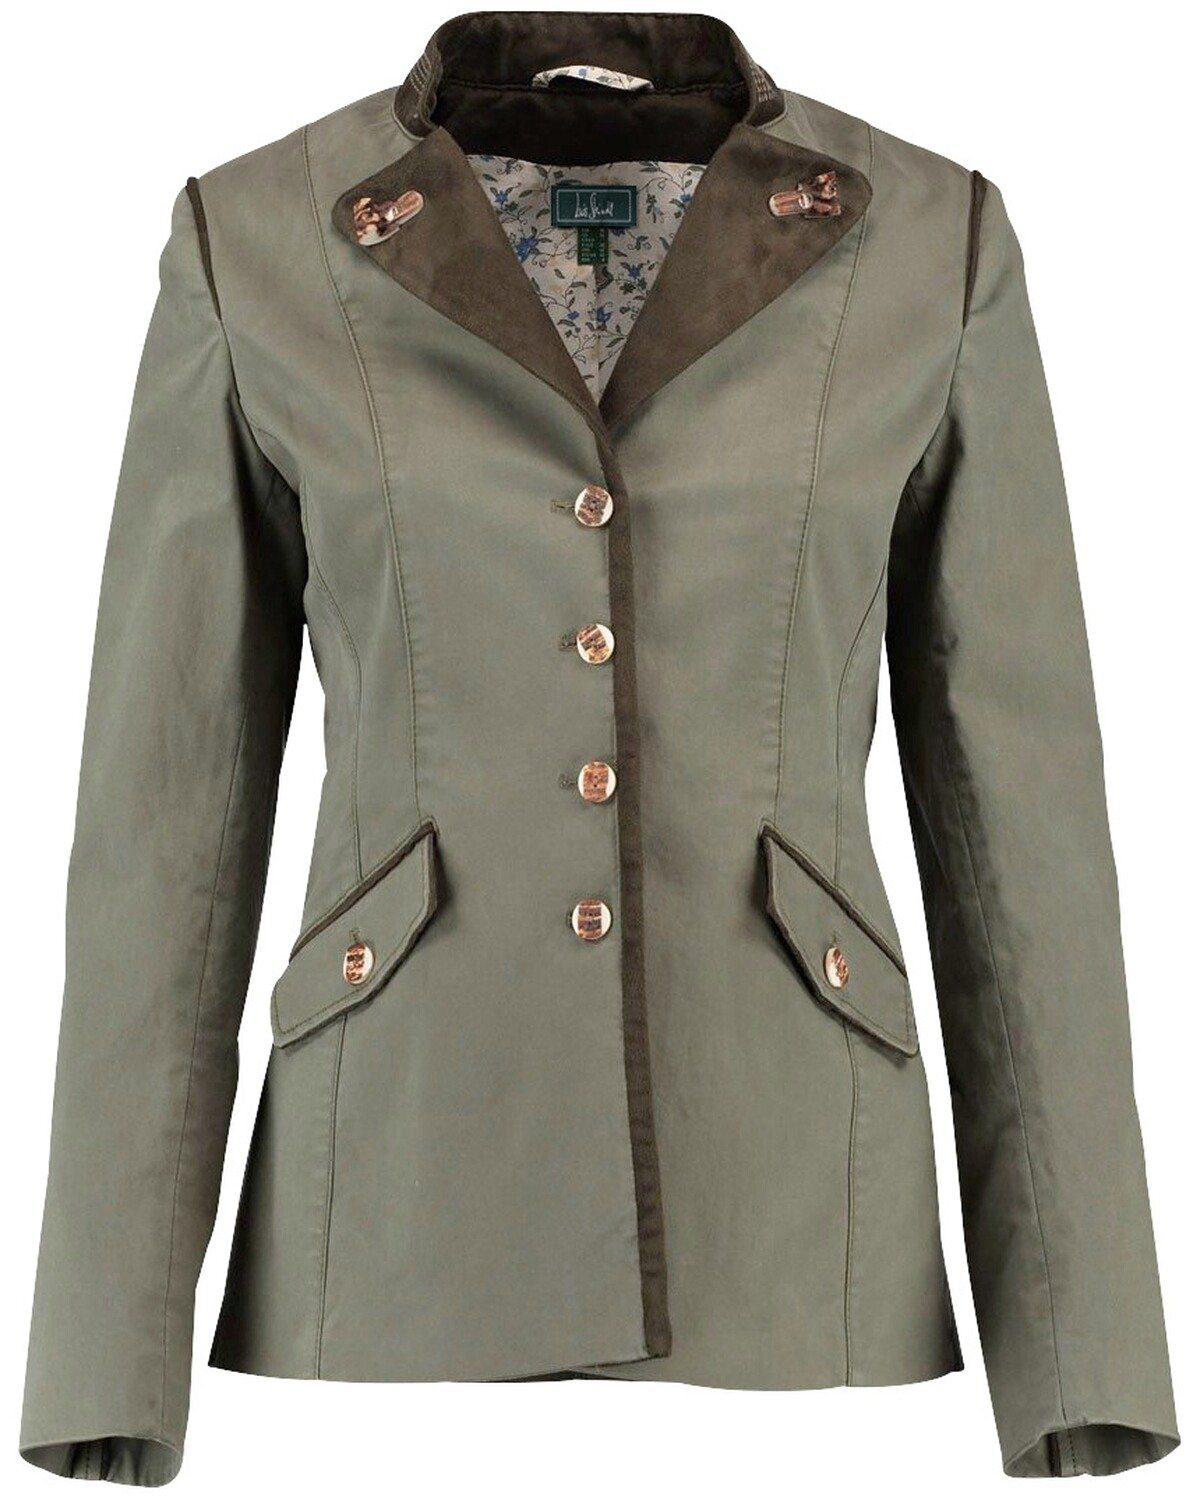 Damen Jacken Luis Steindl Trachtenjacke Trachtenblazer mit Kontrastdetails